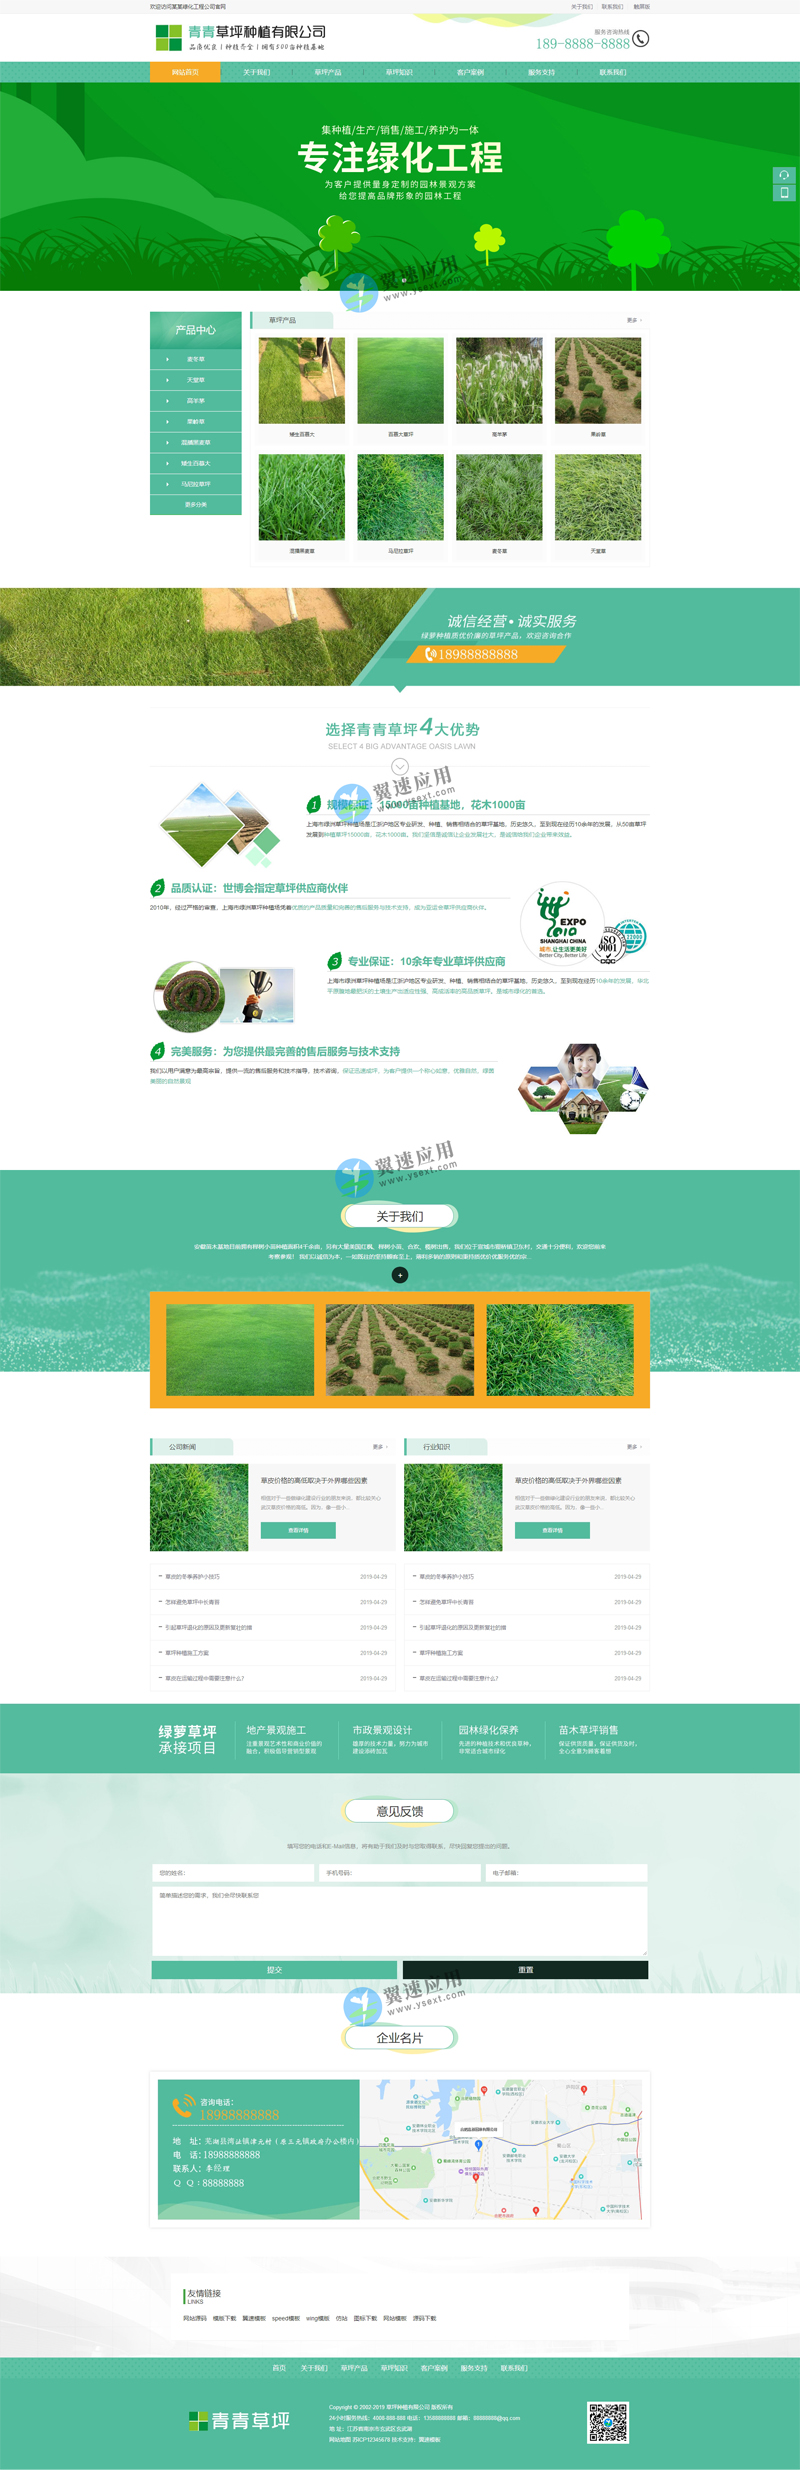 苗木种植网站图片.jpg